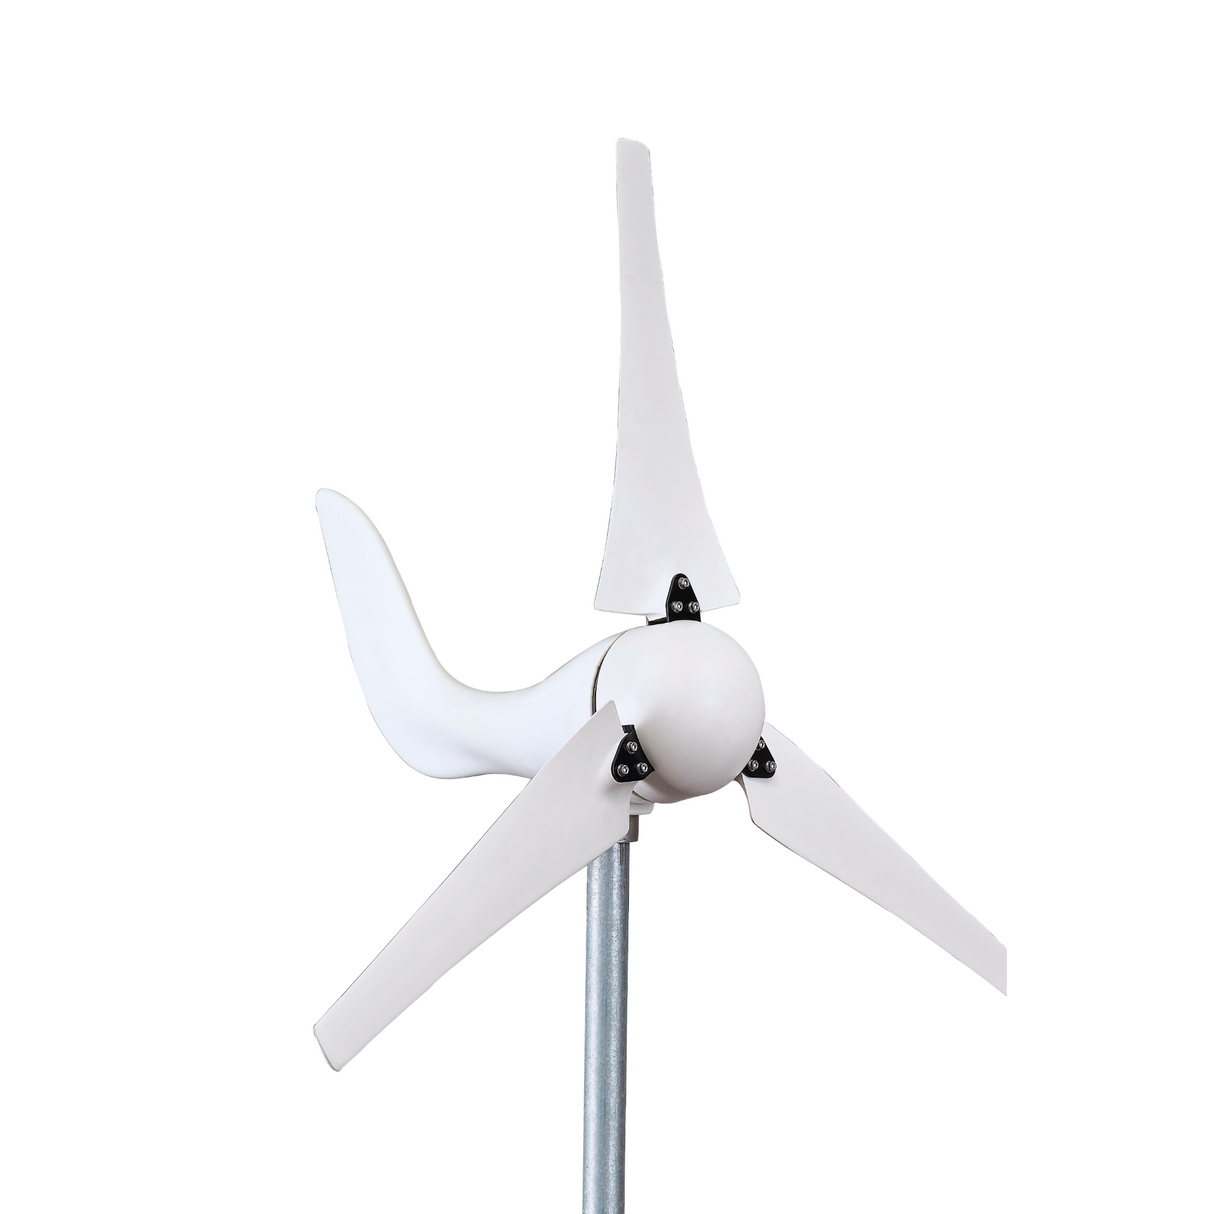 Automaxx Marine 400W Wind Turbine Generator Kit